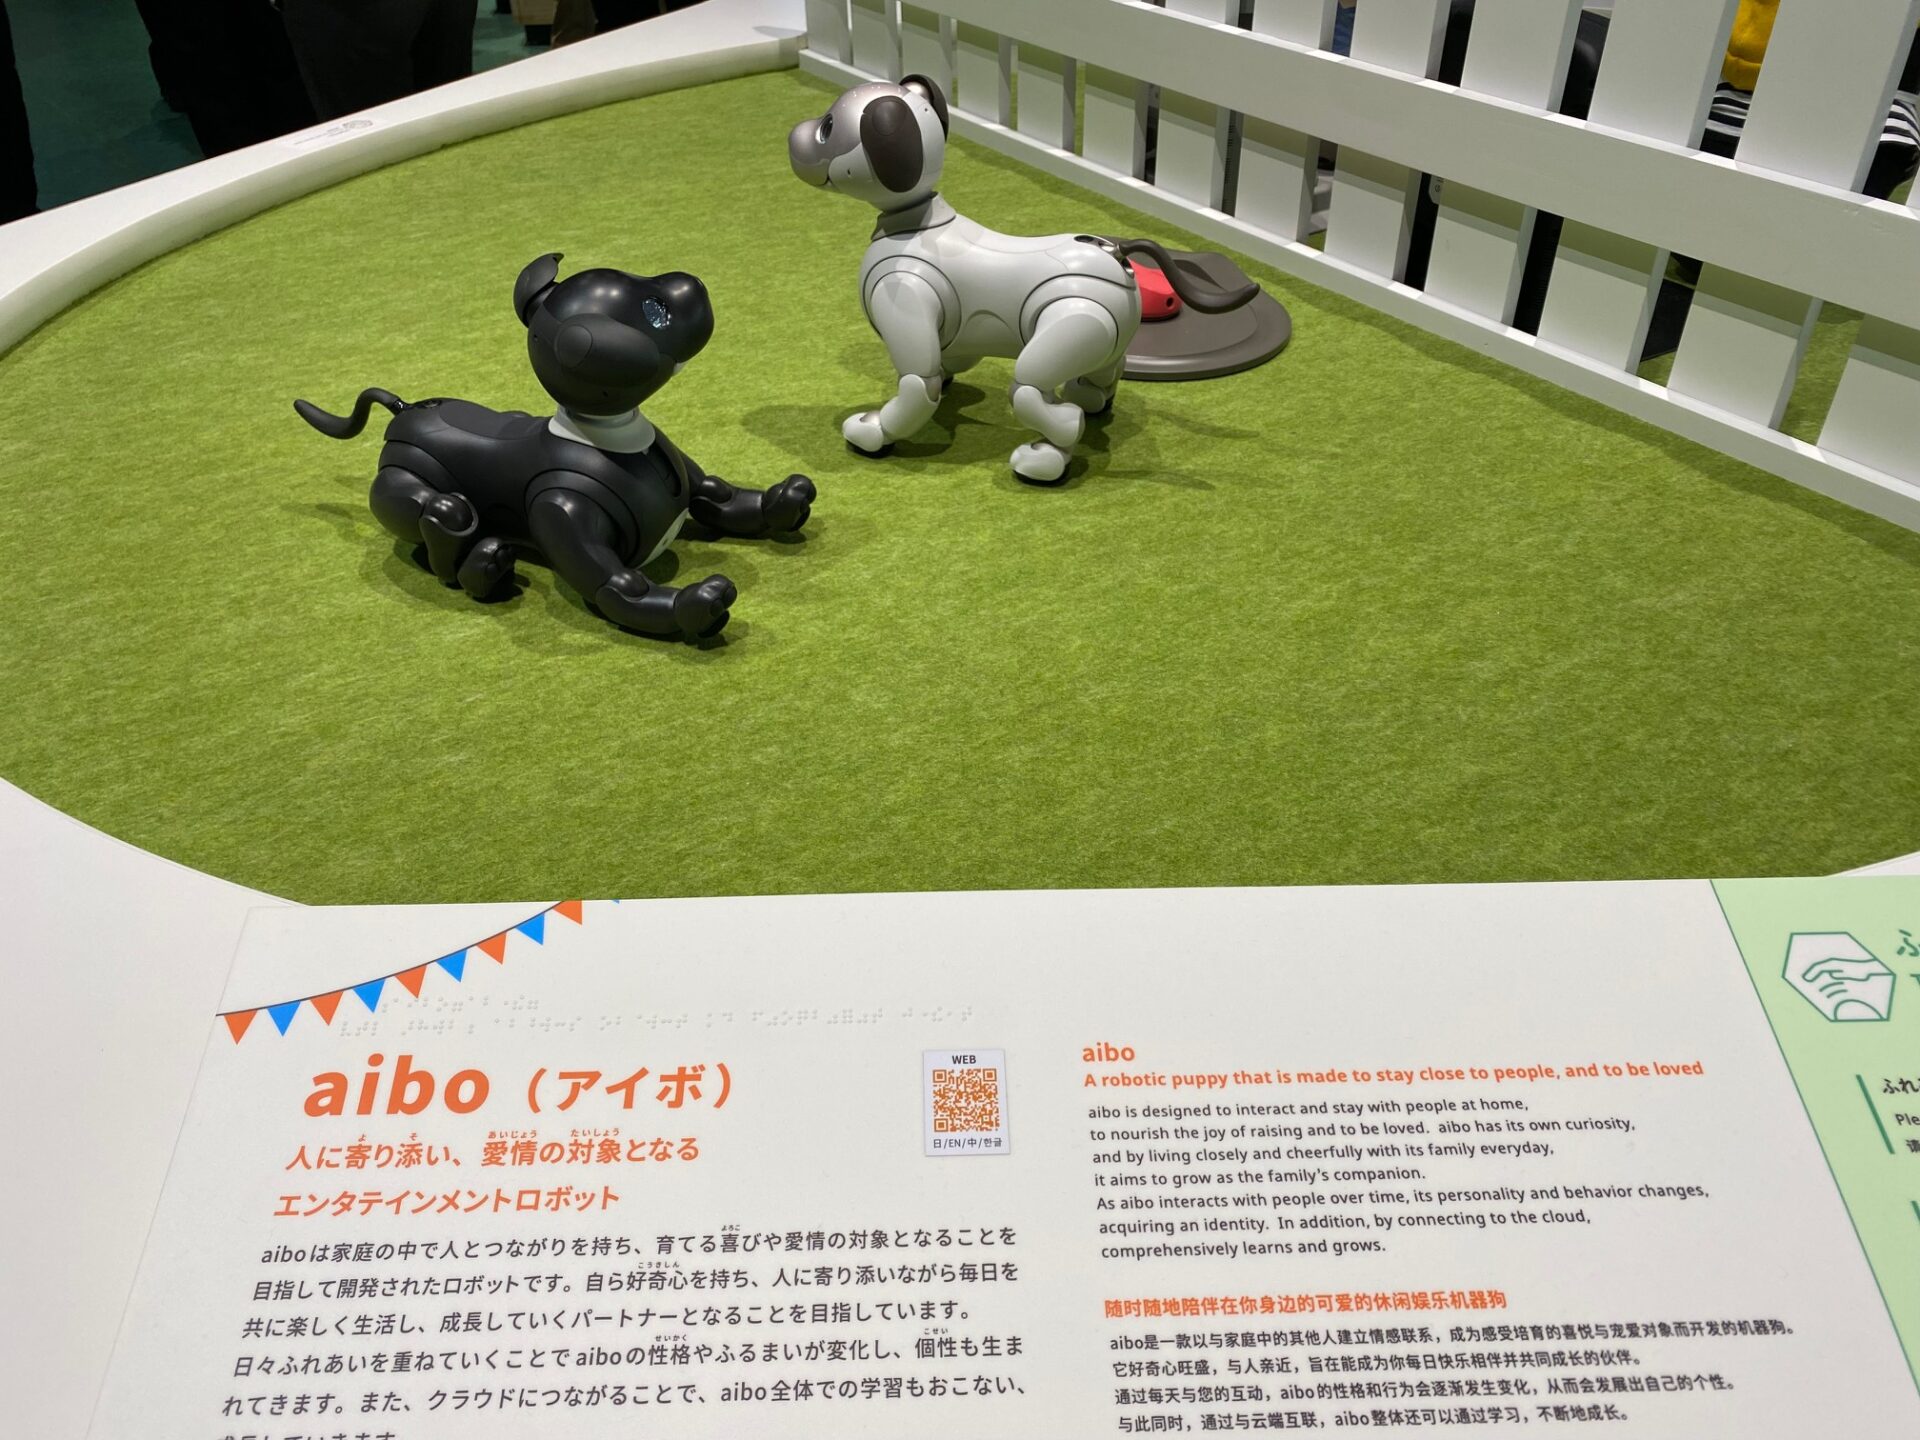 「アイボ」の写真。犬のようなこがたロボットです。座ったりさまざまなしぐさをします。見たり聞いたりしたことがある人も多いのでは。こちらはさわれます